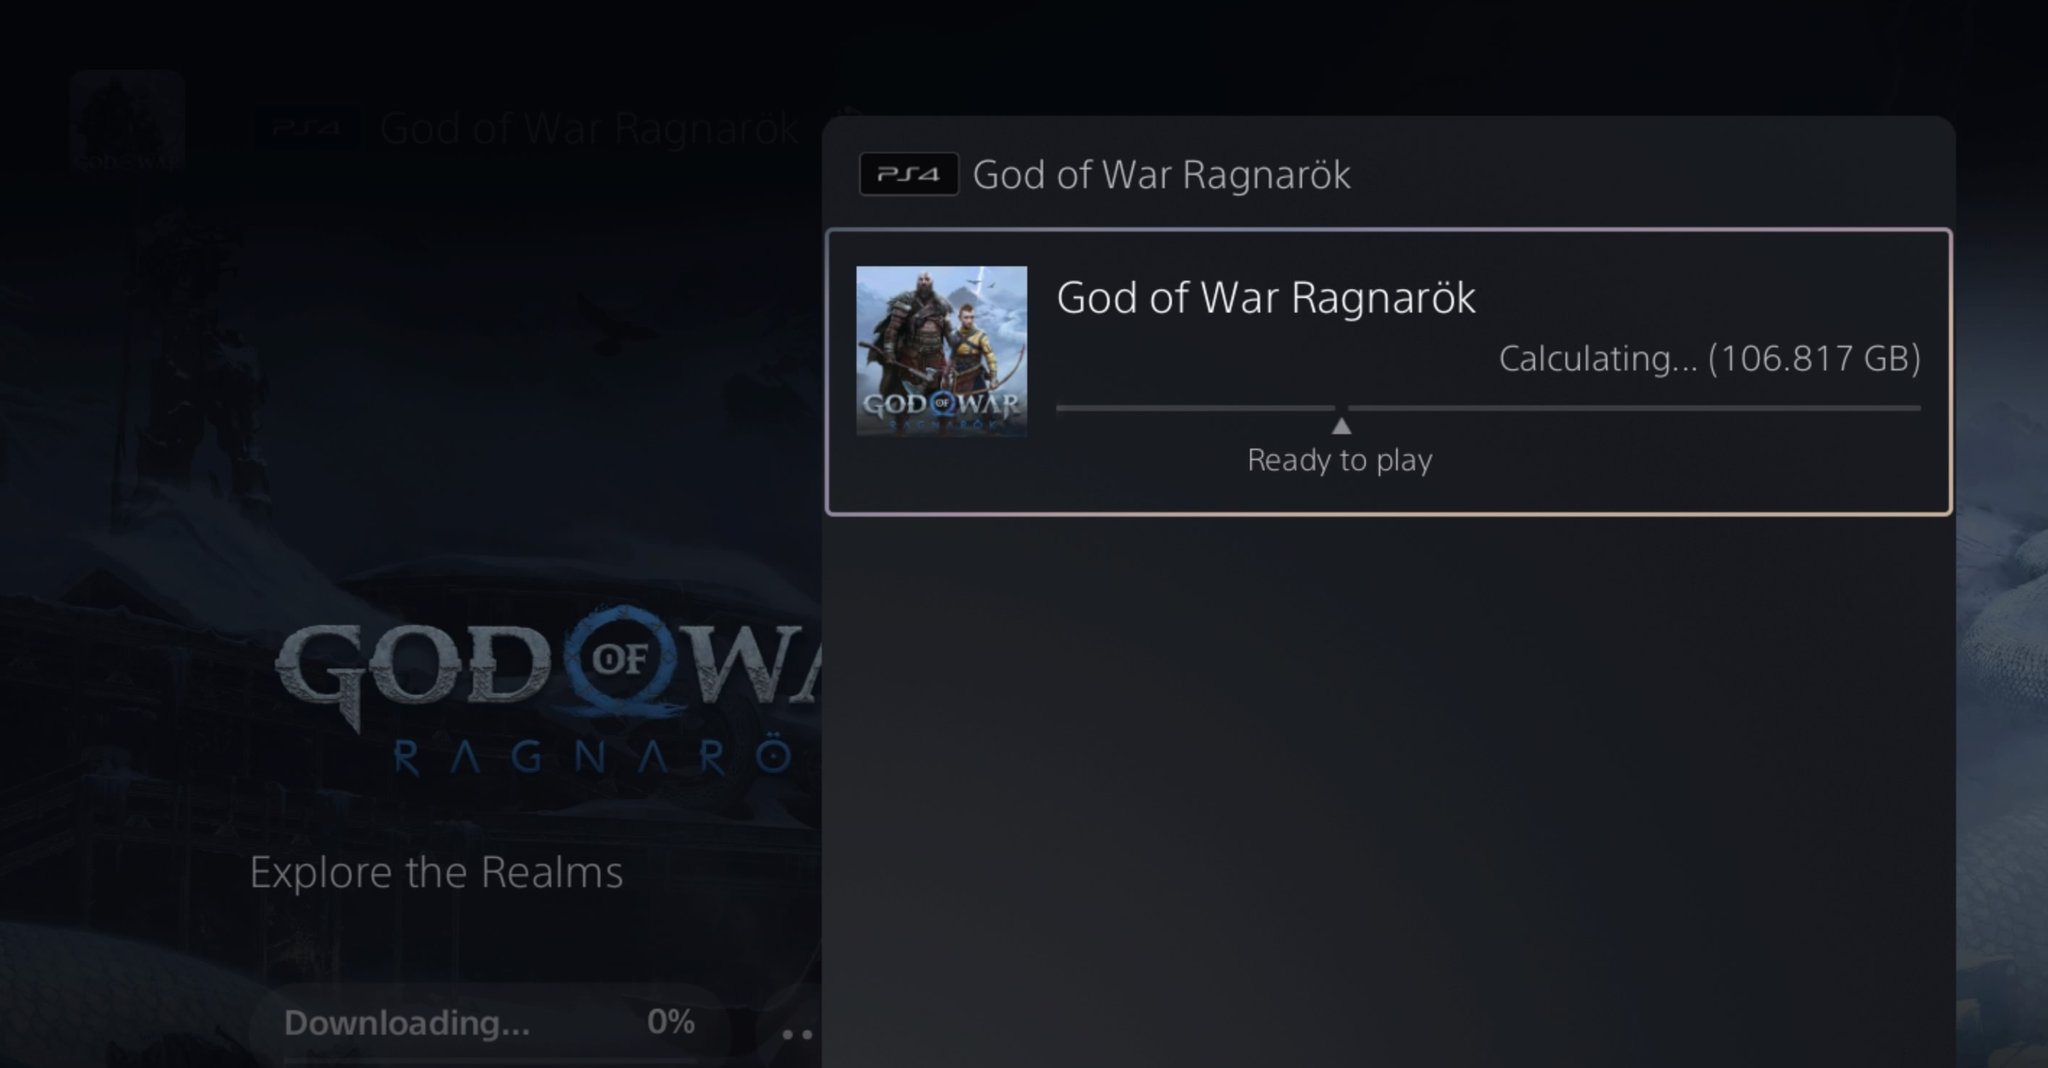 God of war ragnarok pre-load size